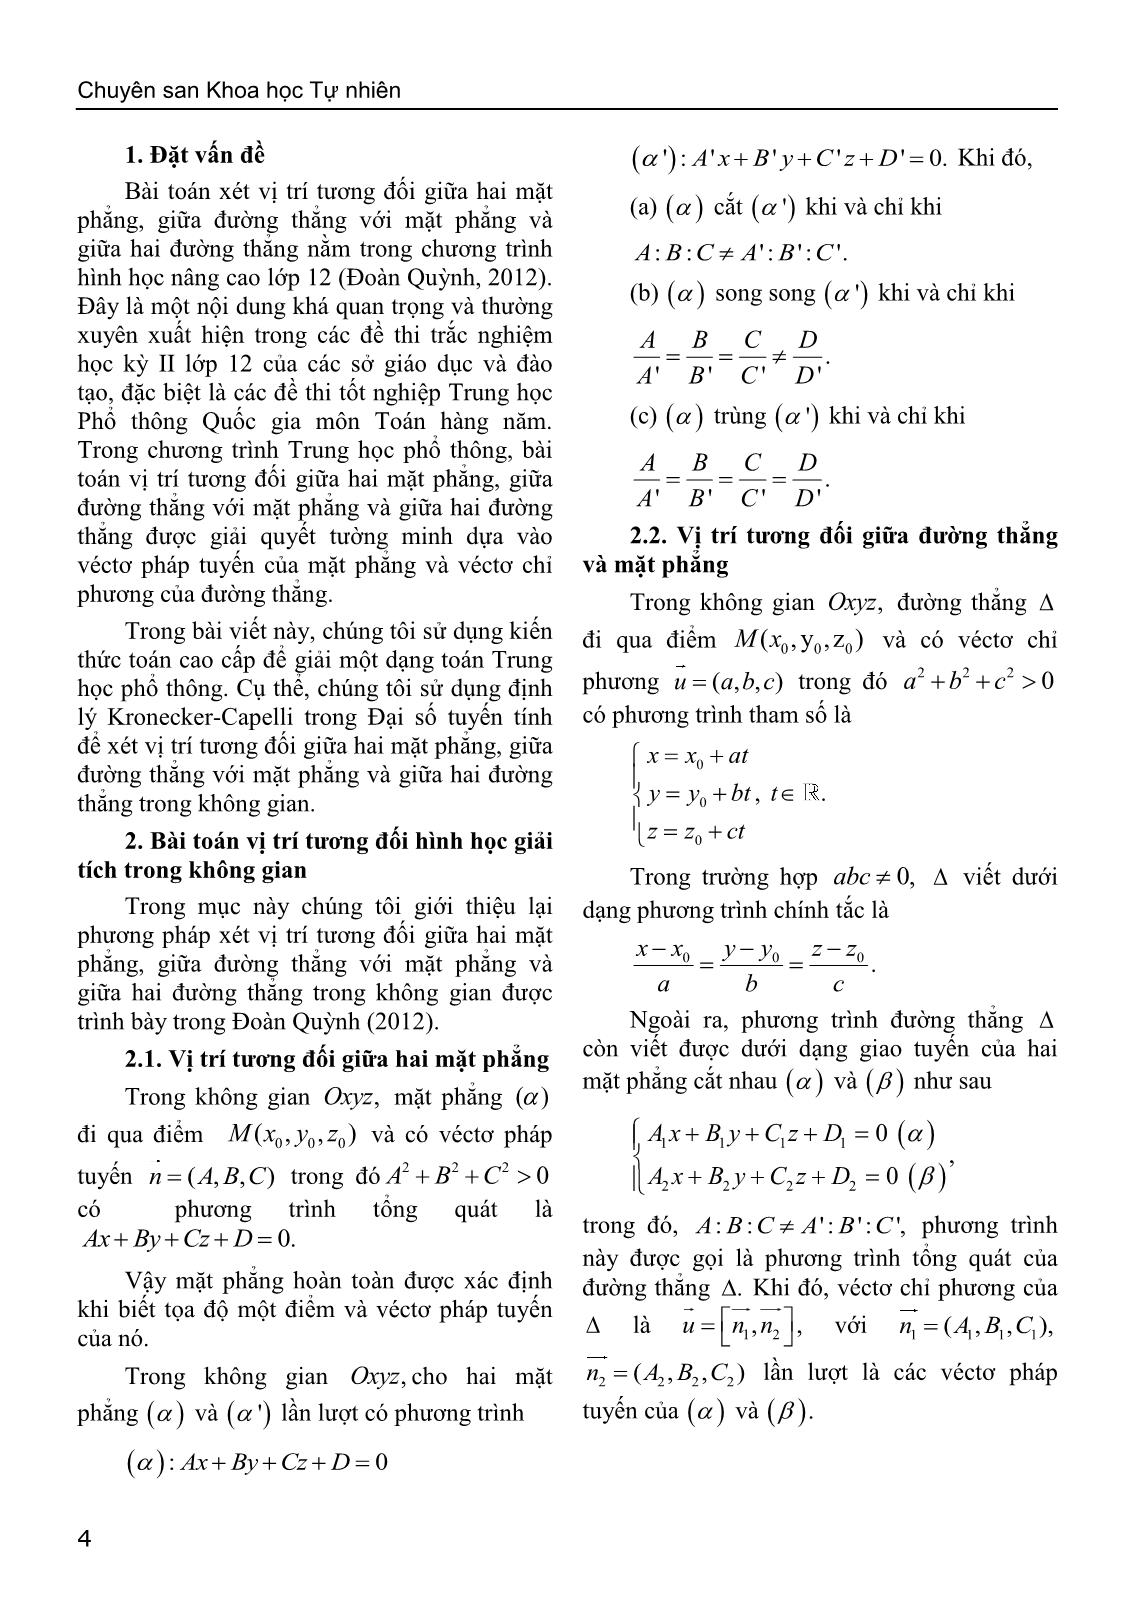 Sử dụng định lý Kronecker-Capelli giải bài toán về vị trí tương đối của hình học giải tích trong không gian trang 2